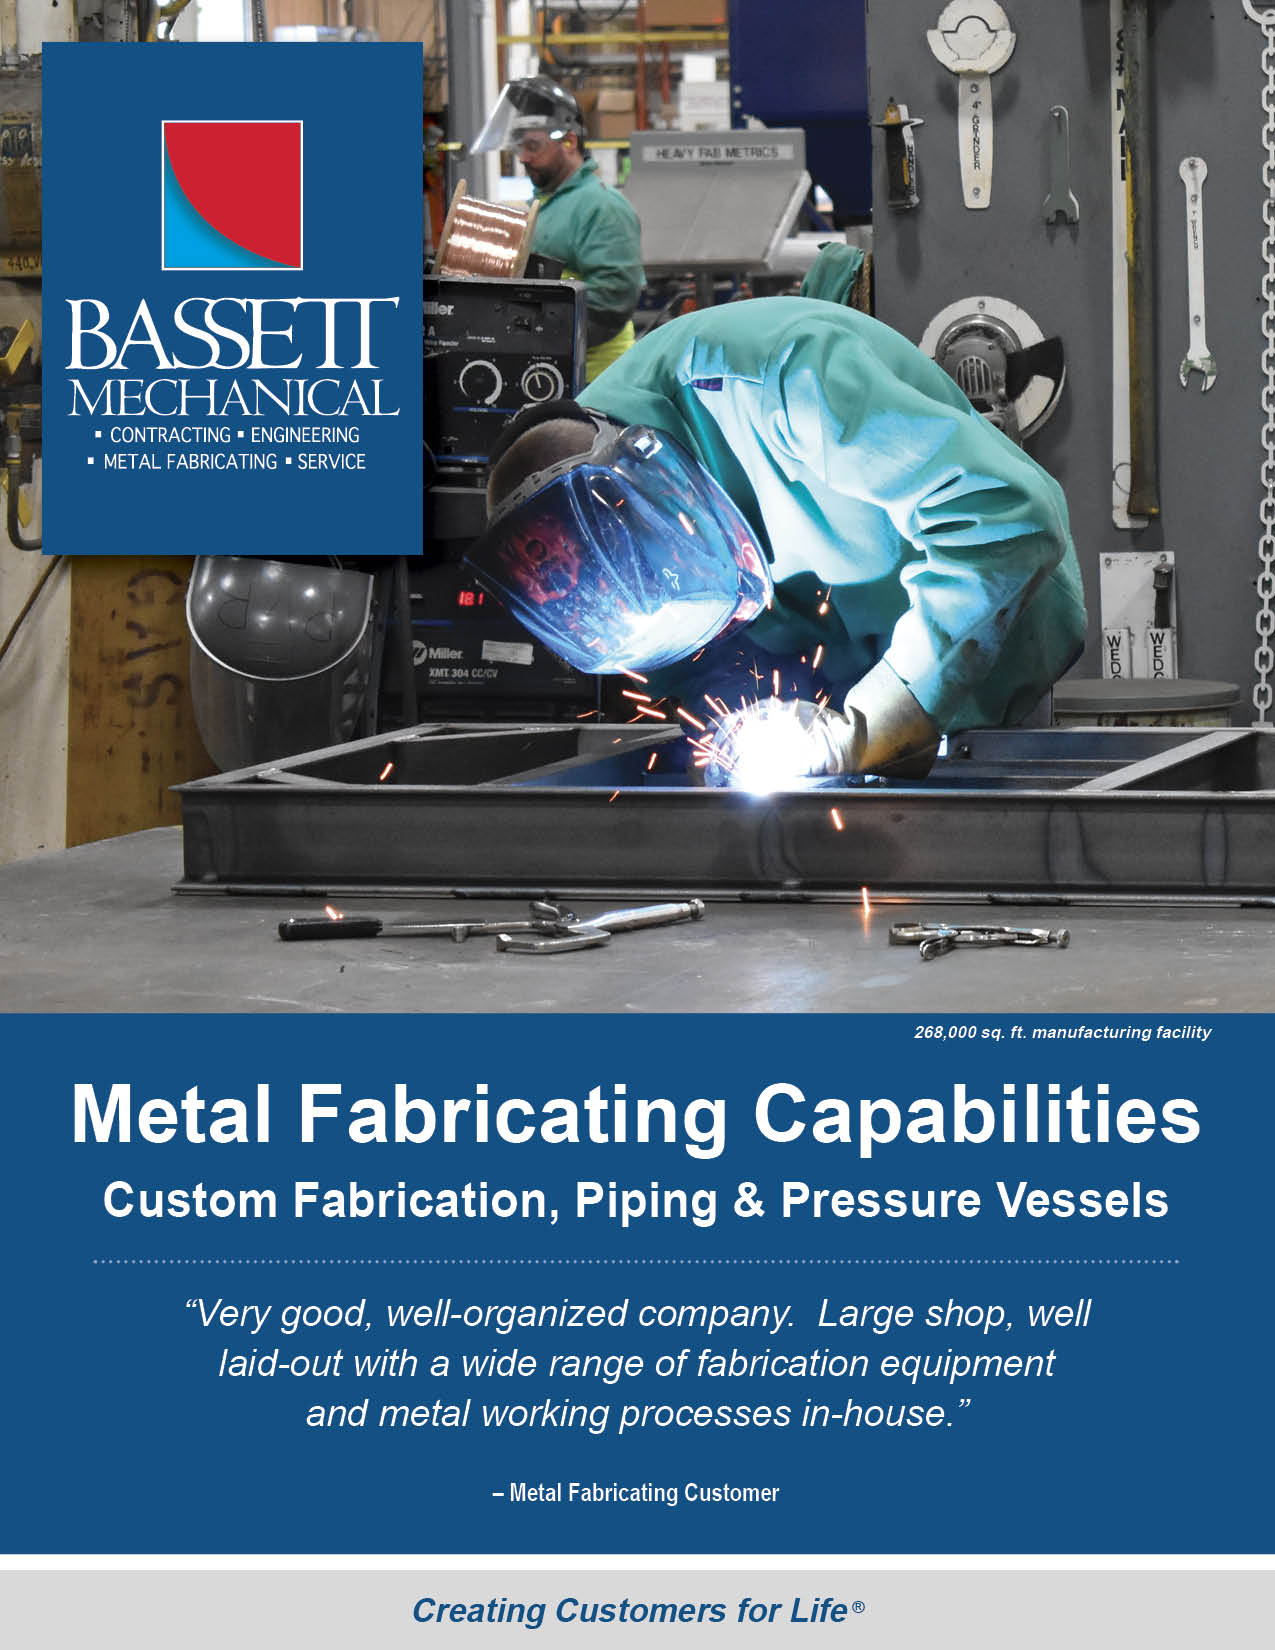 Bassett Metal Fabricating Capabilities 1120